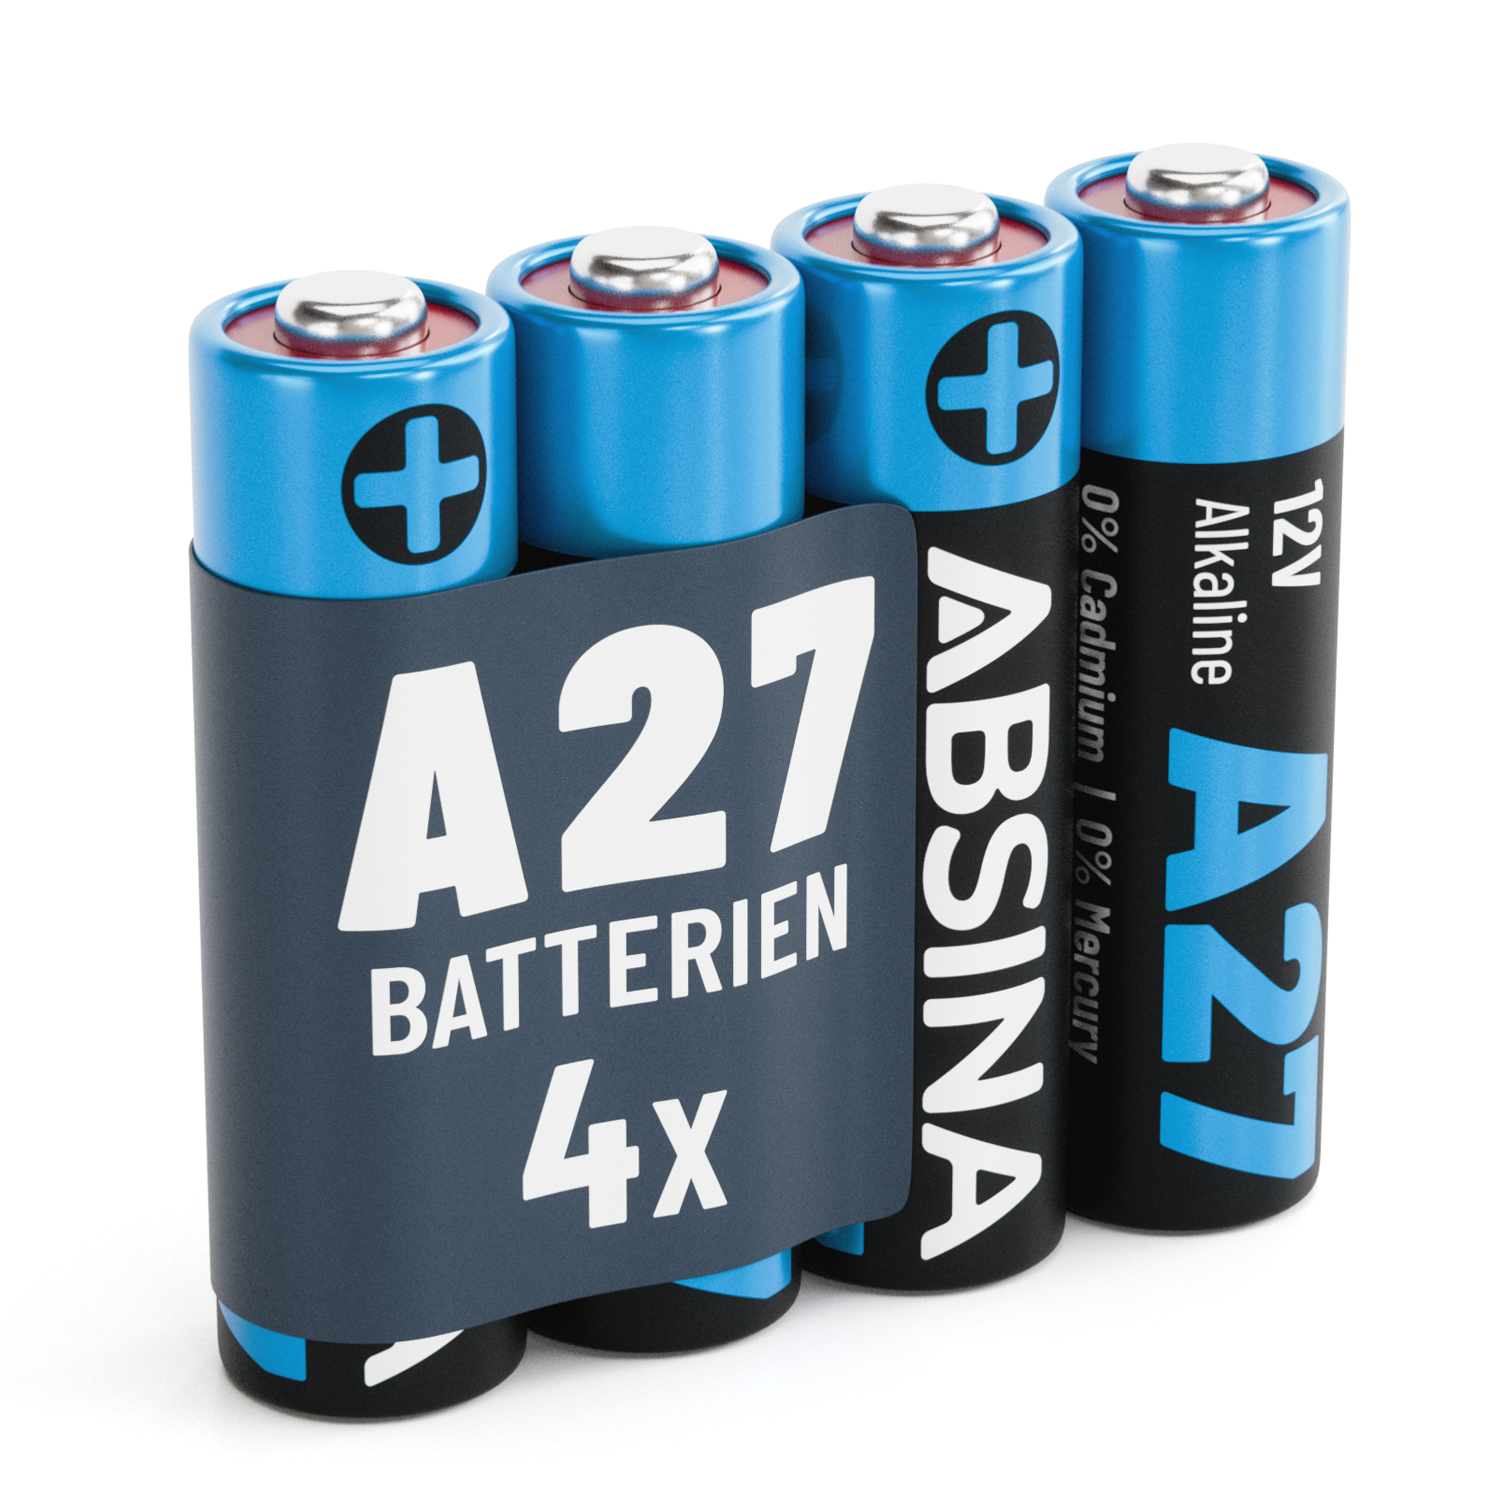 https://www.absina.com/cdn/shop/files/ABSINA-A27-Alkaline-Batterien.png?v=1705654838&width=1500